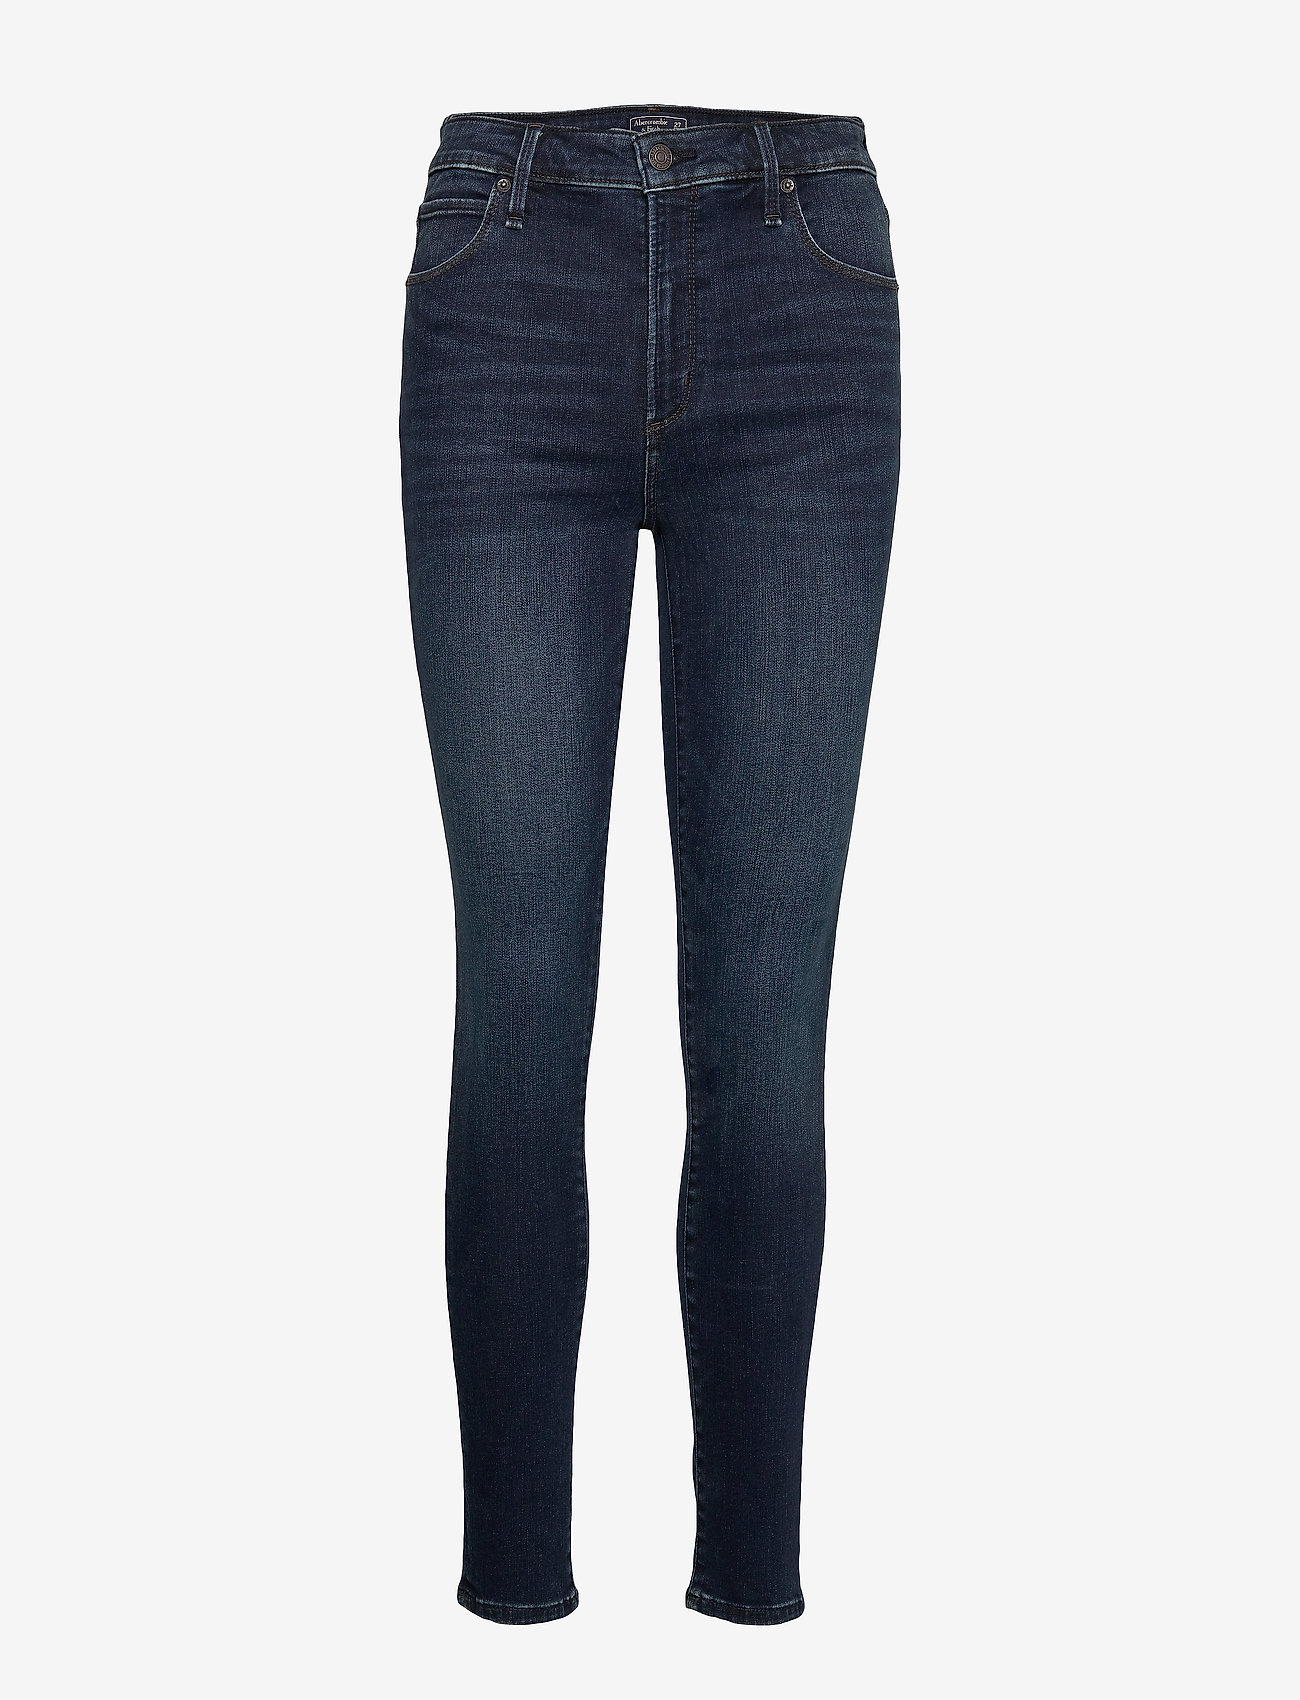 abercrombie simone jeans